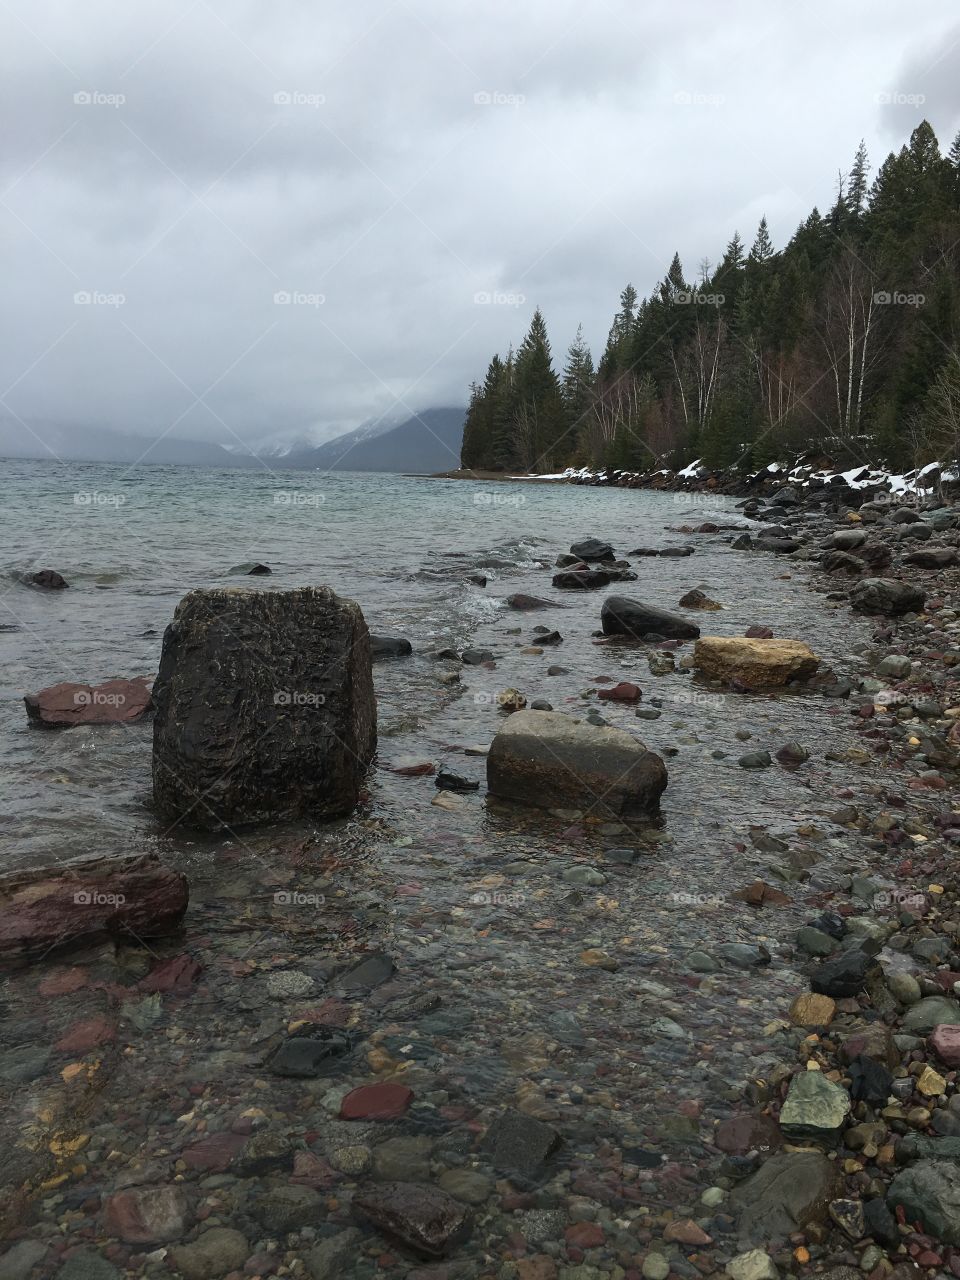 Rocks along Lake McDonald.